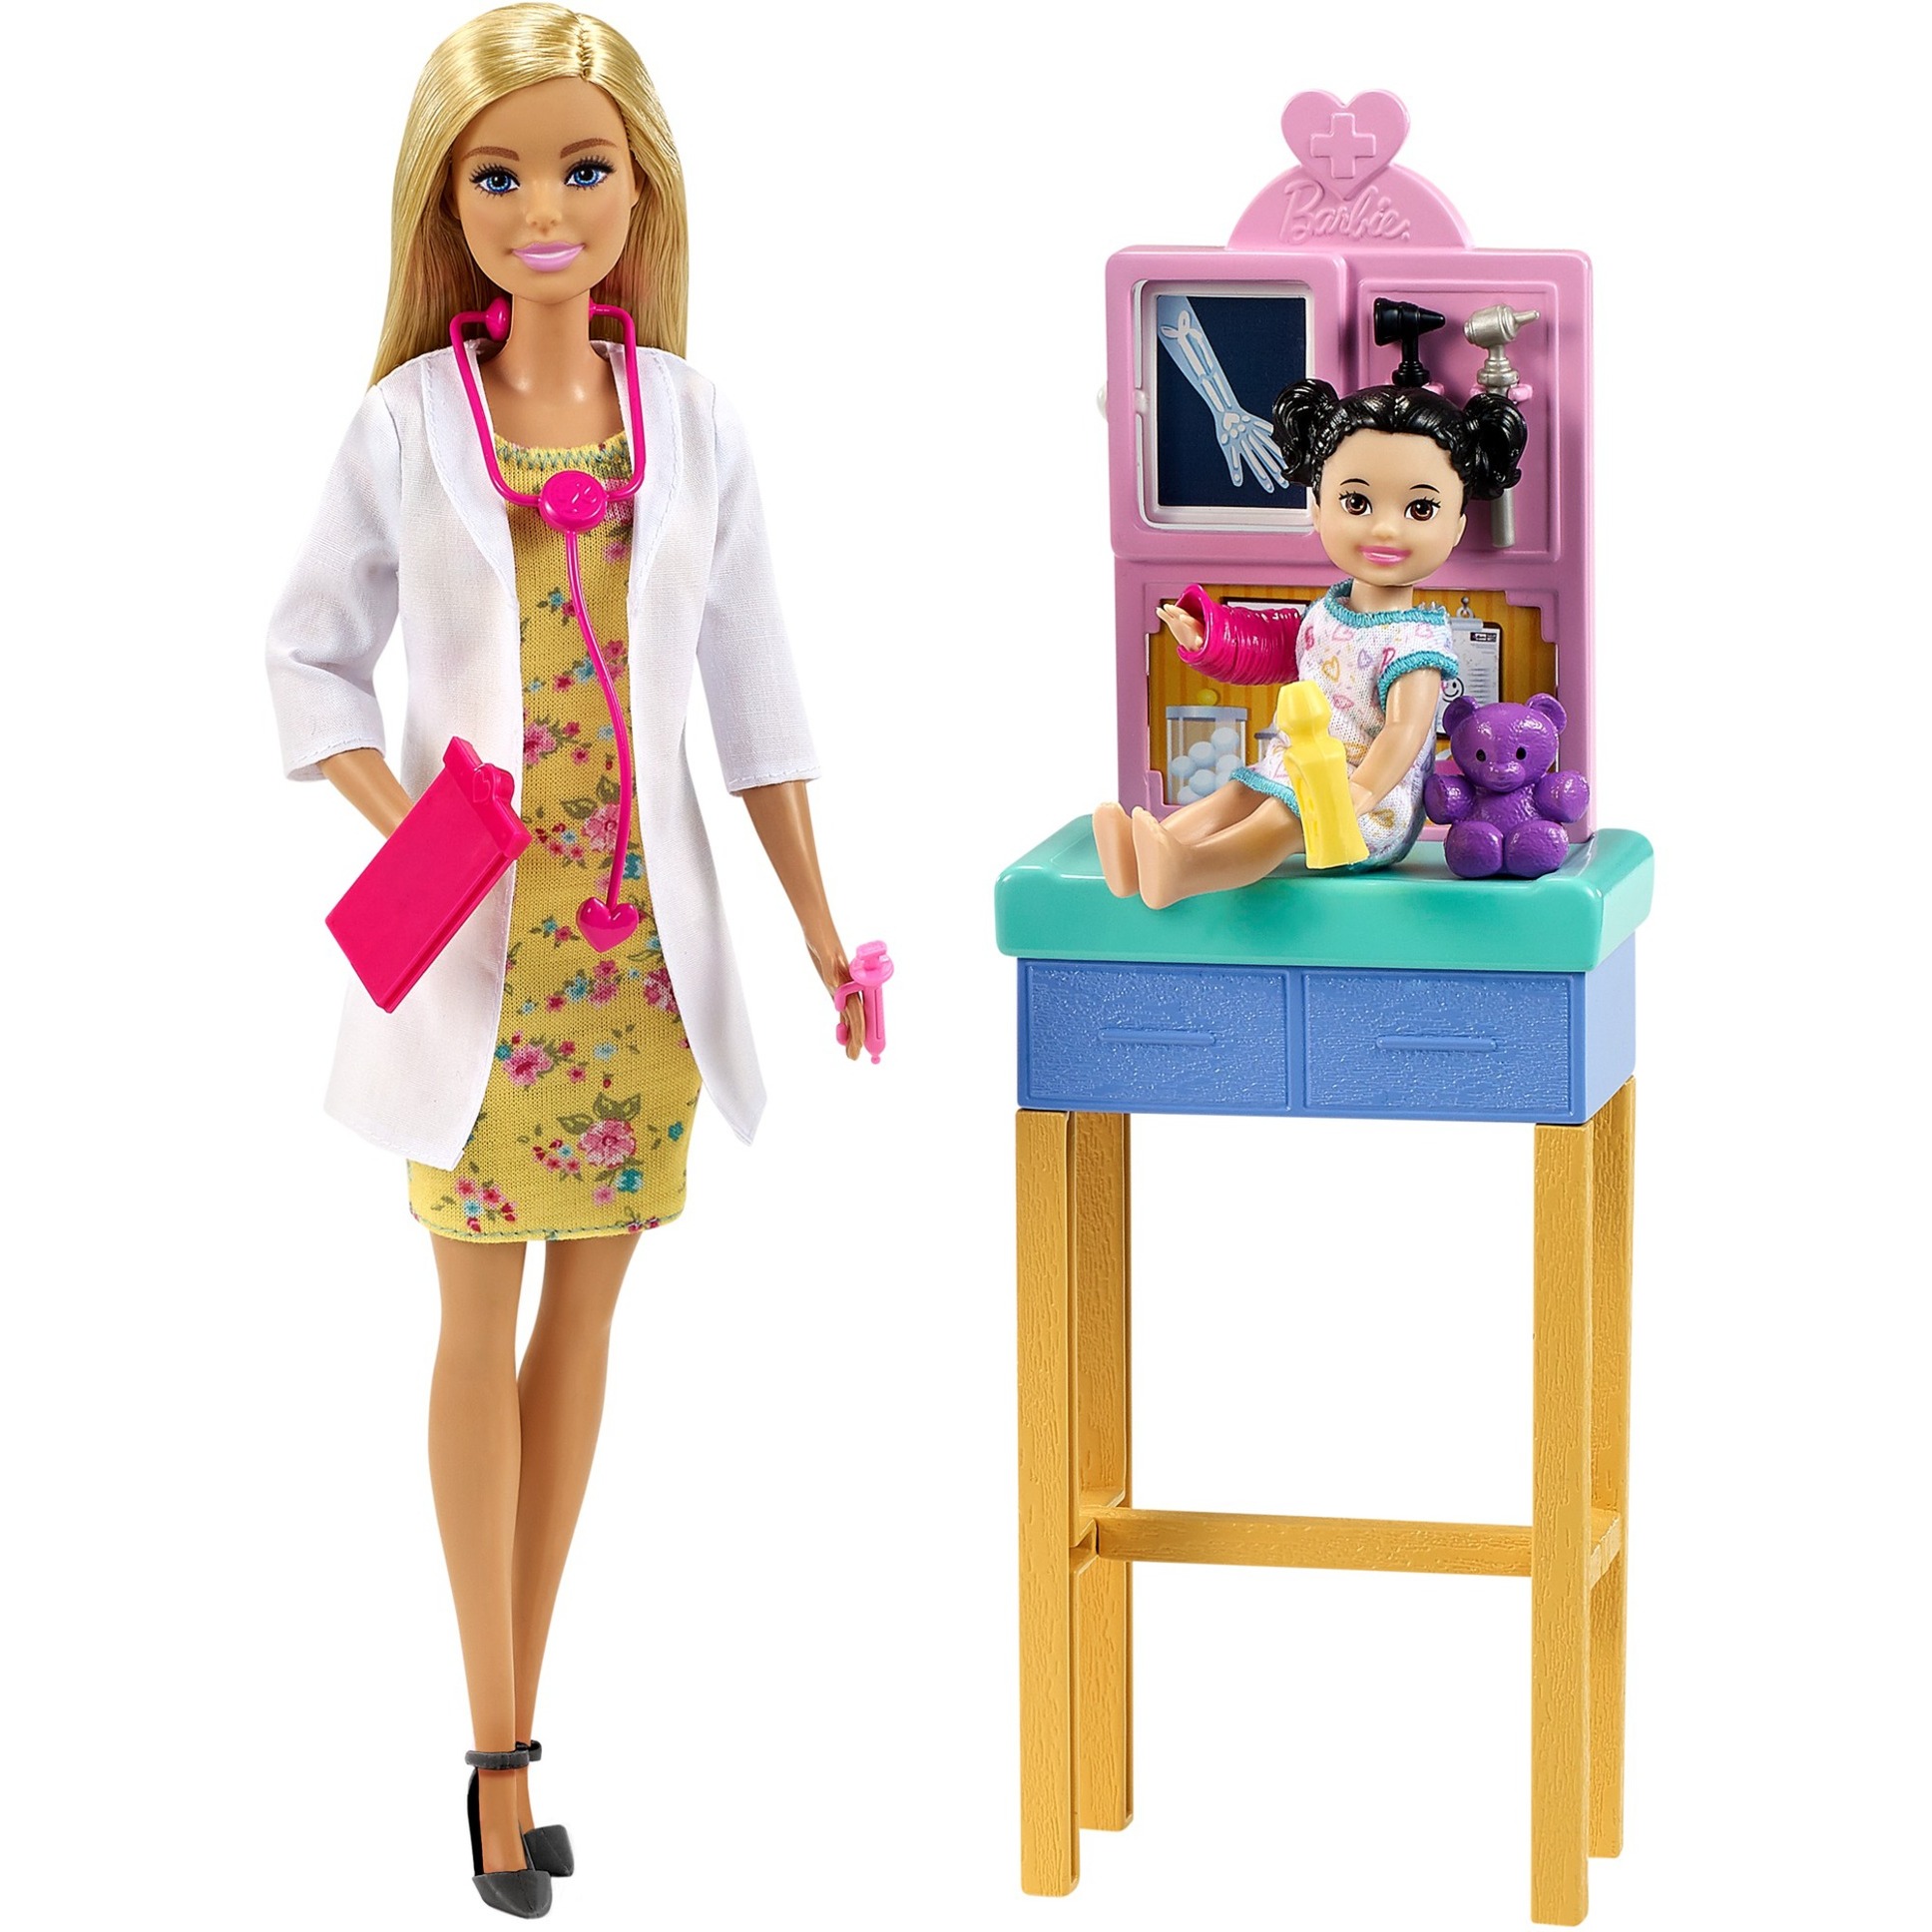 Image of Alternate - Barbie Kinderärztin Puppe (blond), Spielset mit Kleinkind online einkaufen bei Alternate